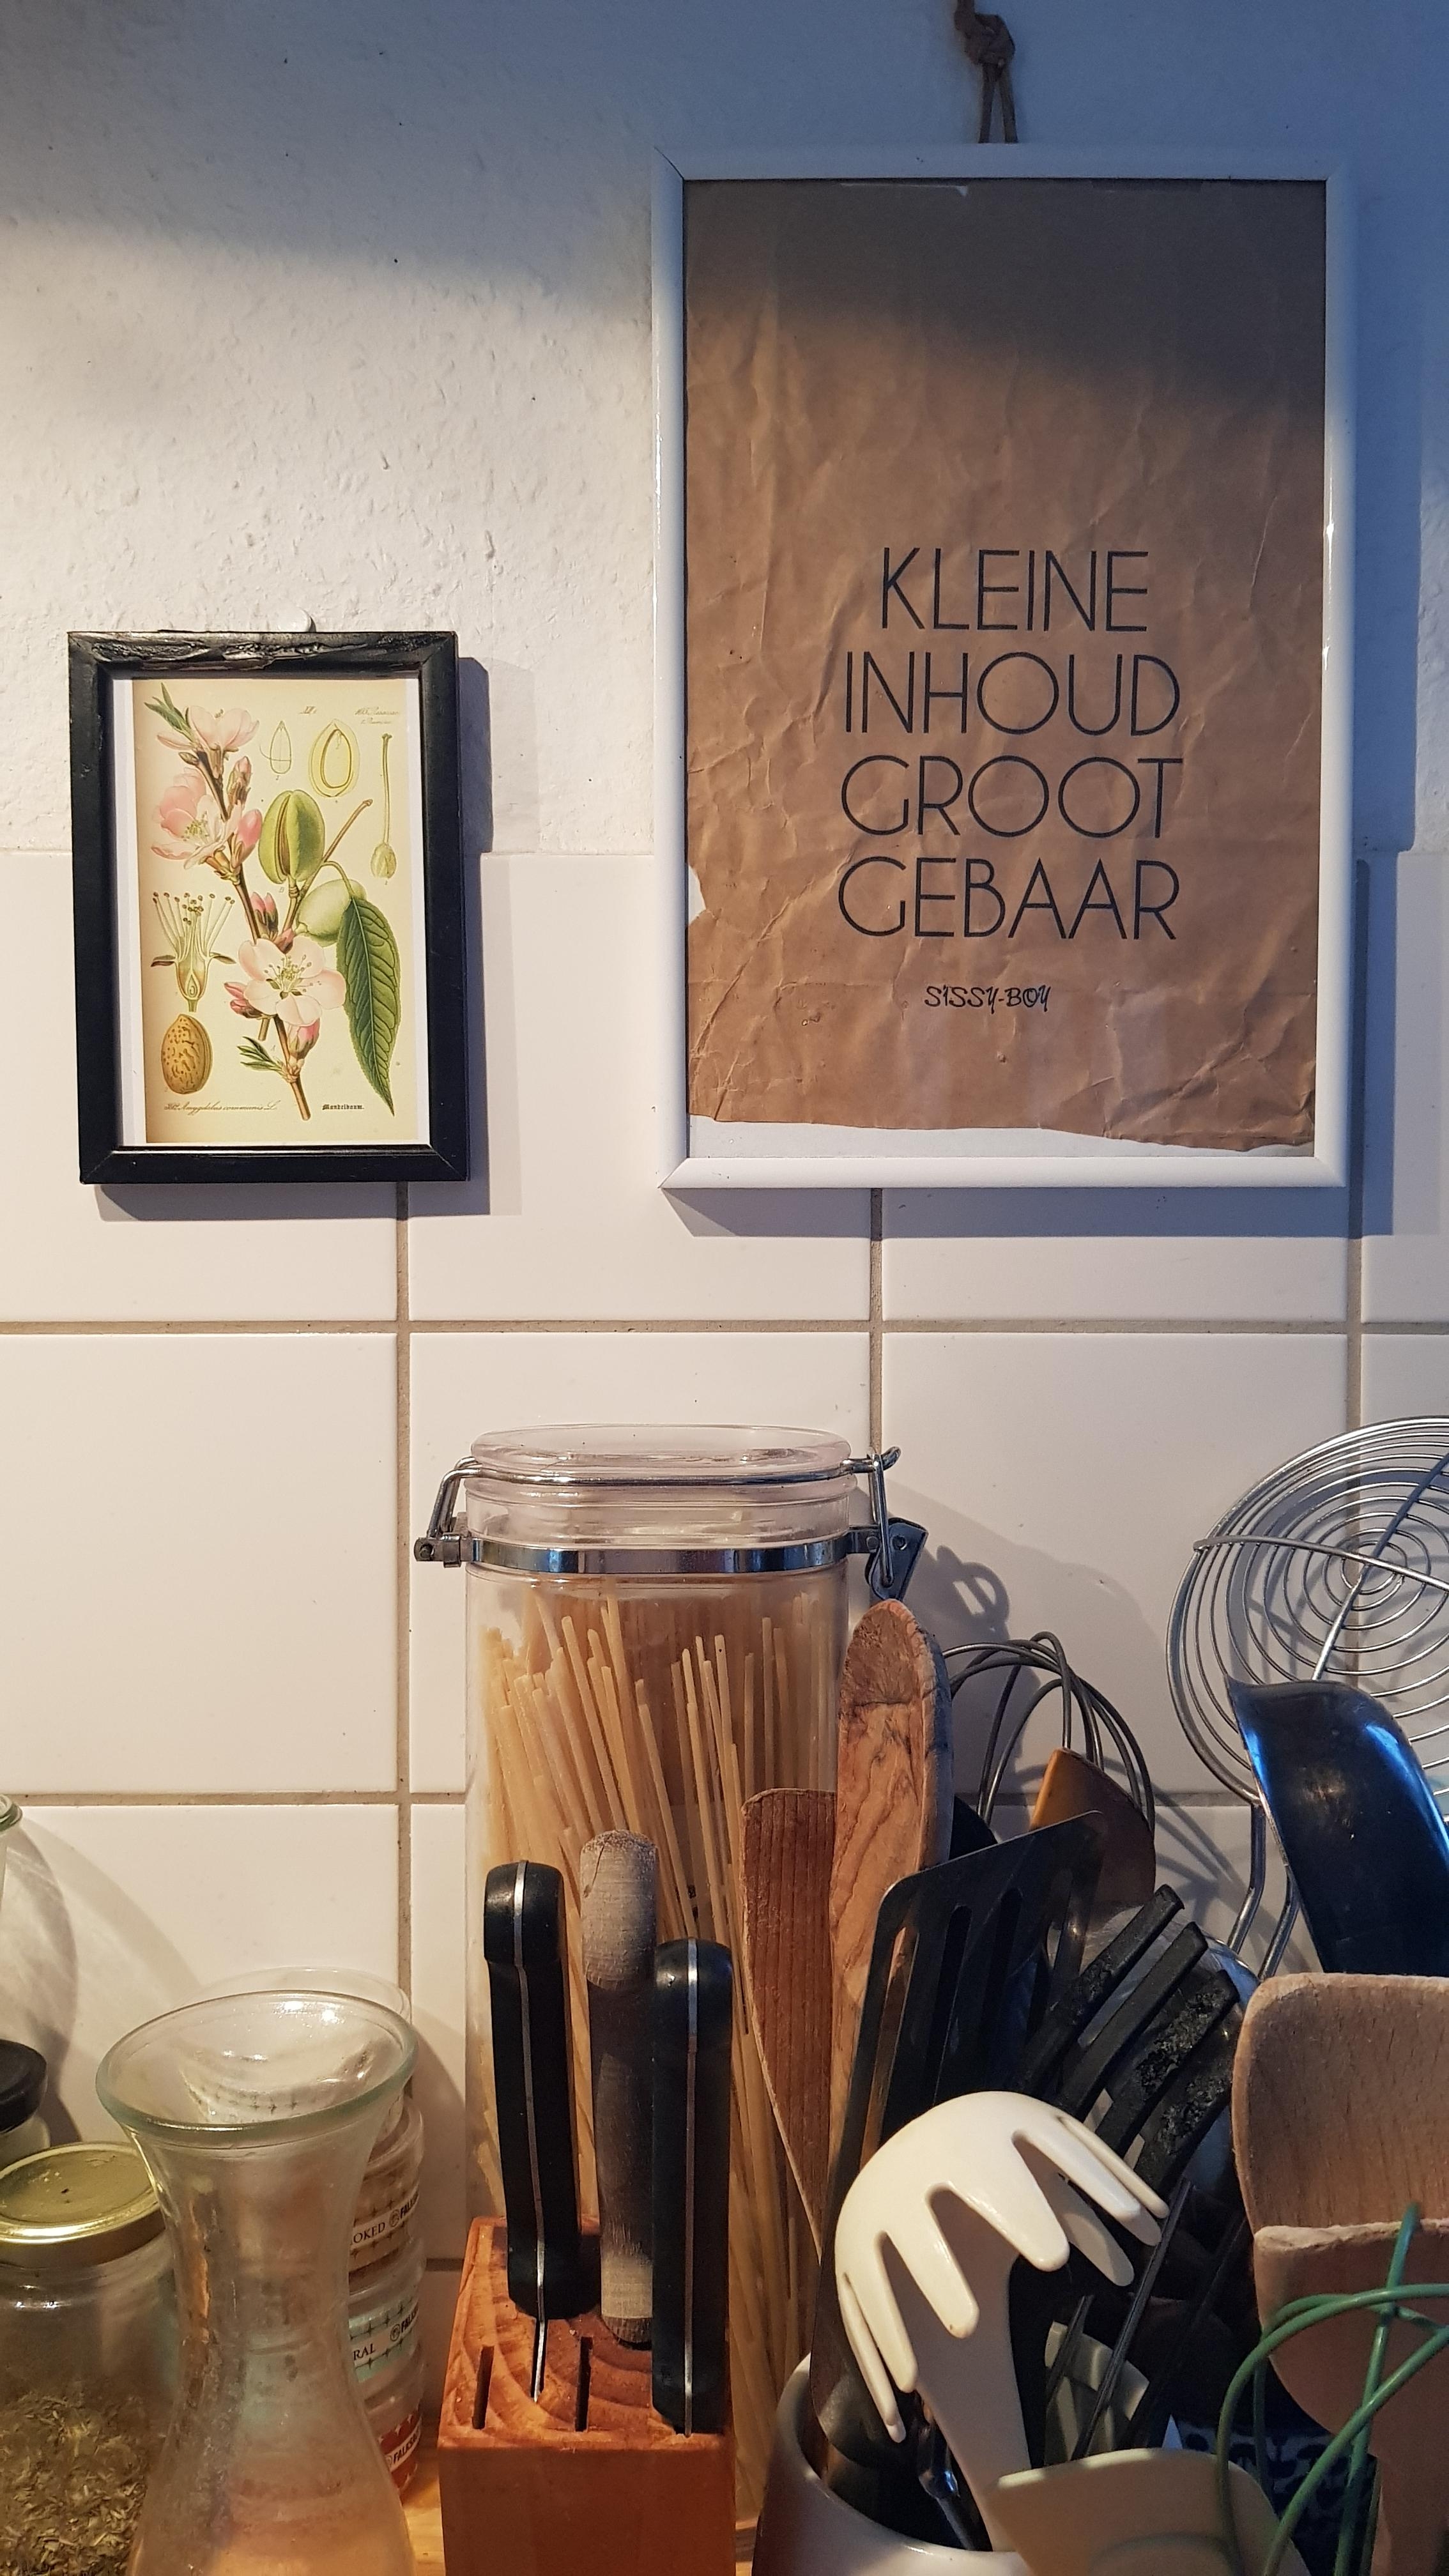 #frühling in der #küche
- mit neuem Bild... le mandorle ☀️☀️